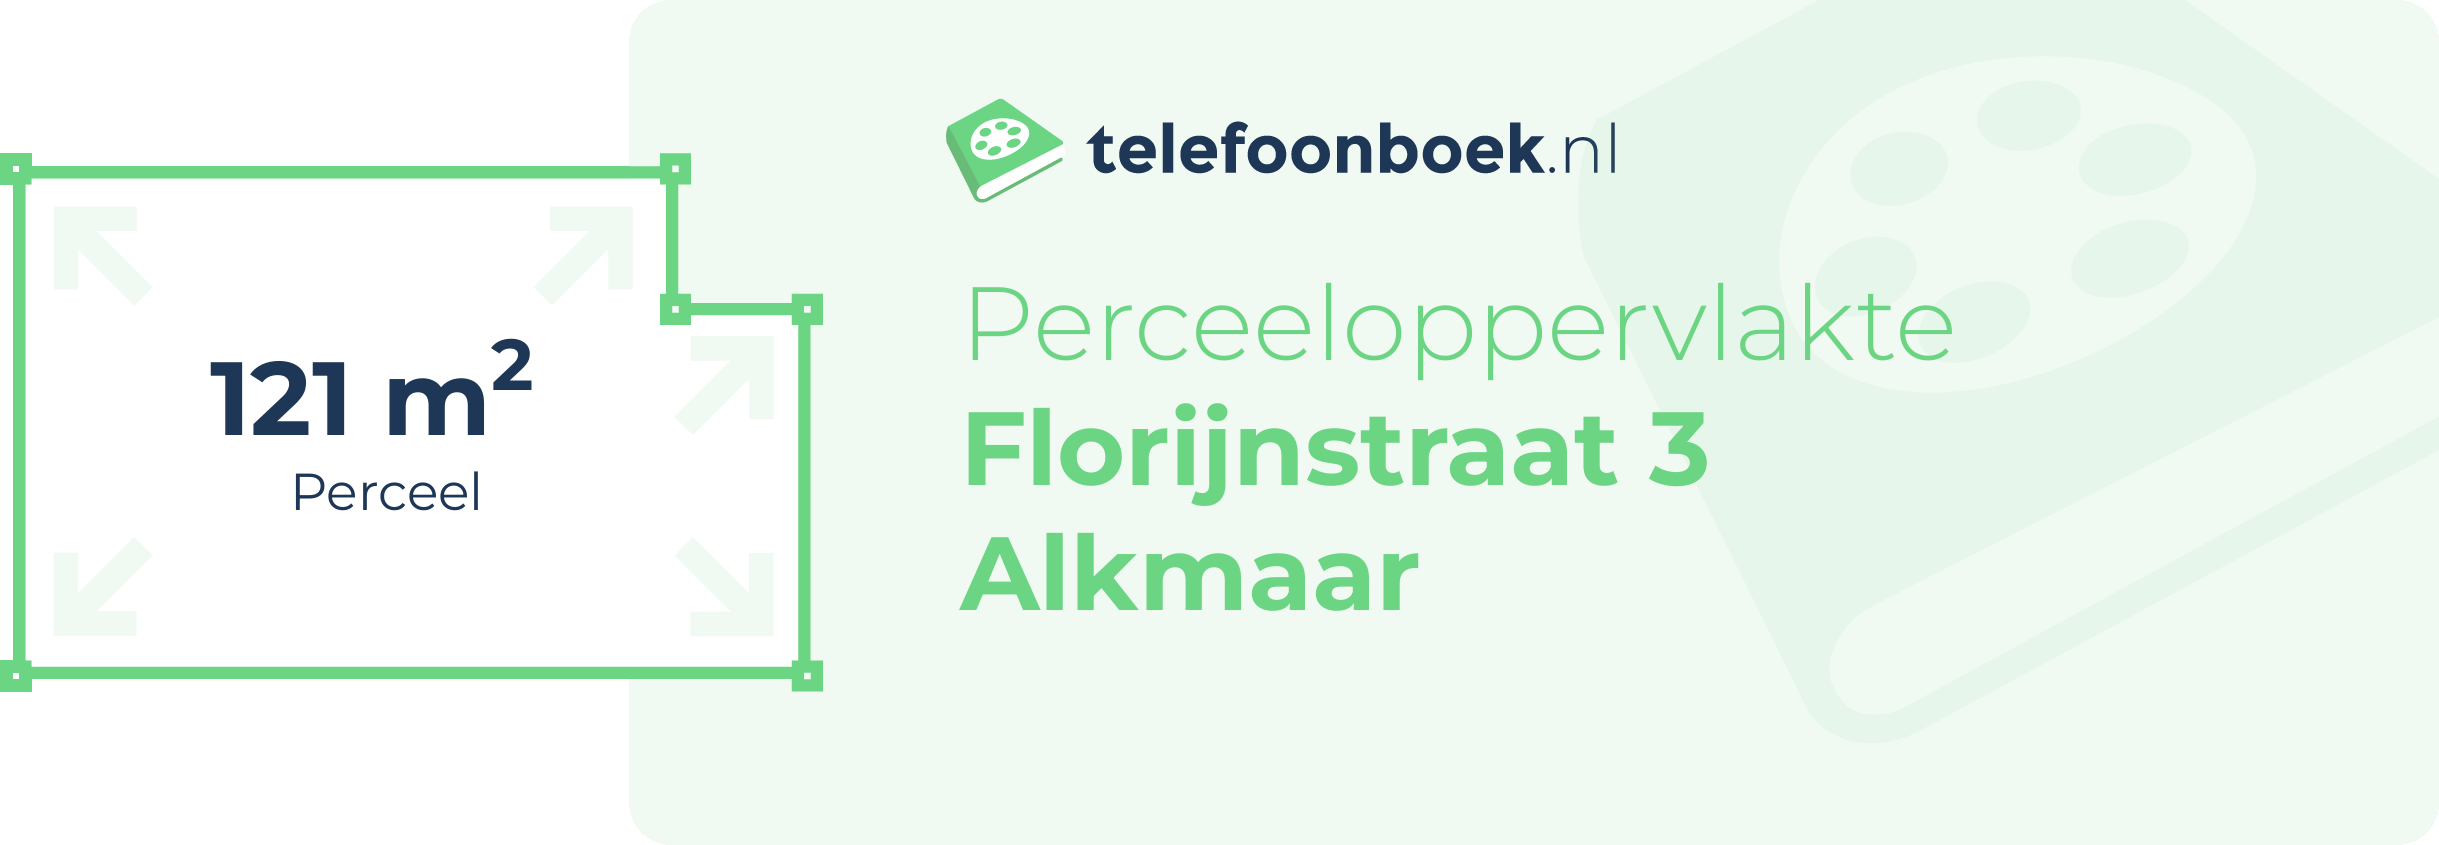 Perceeloppervlakte Florijnstraat 3 Alkmaar